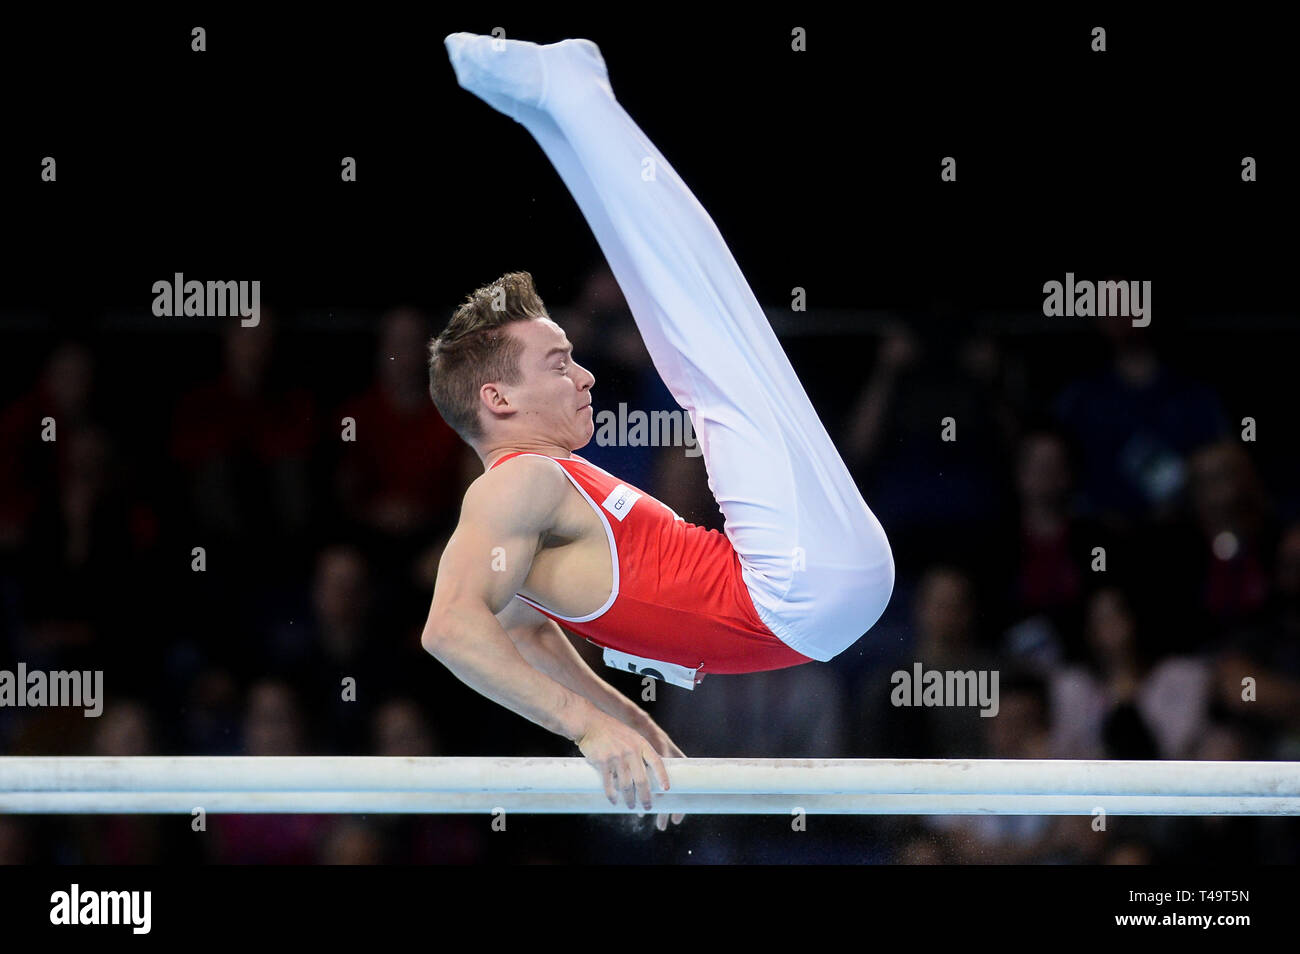 Christian Baumann de Suisse vu en action lors de la finale de l'appareil 8e championnats d'Europe en gymnastique artistique (jour 5). Banque D'Images